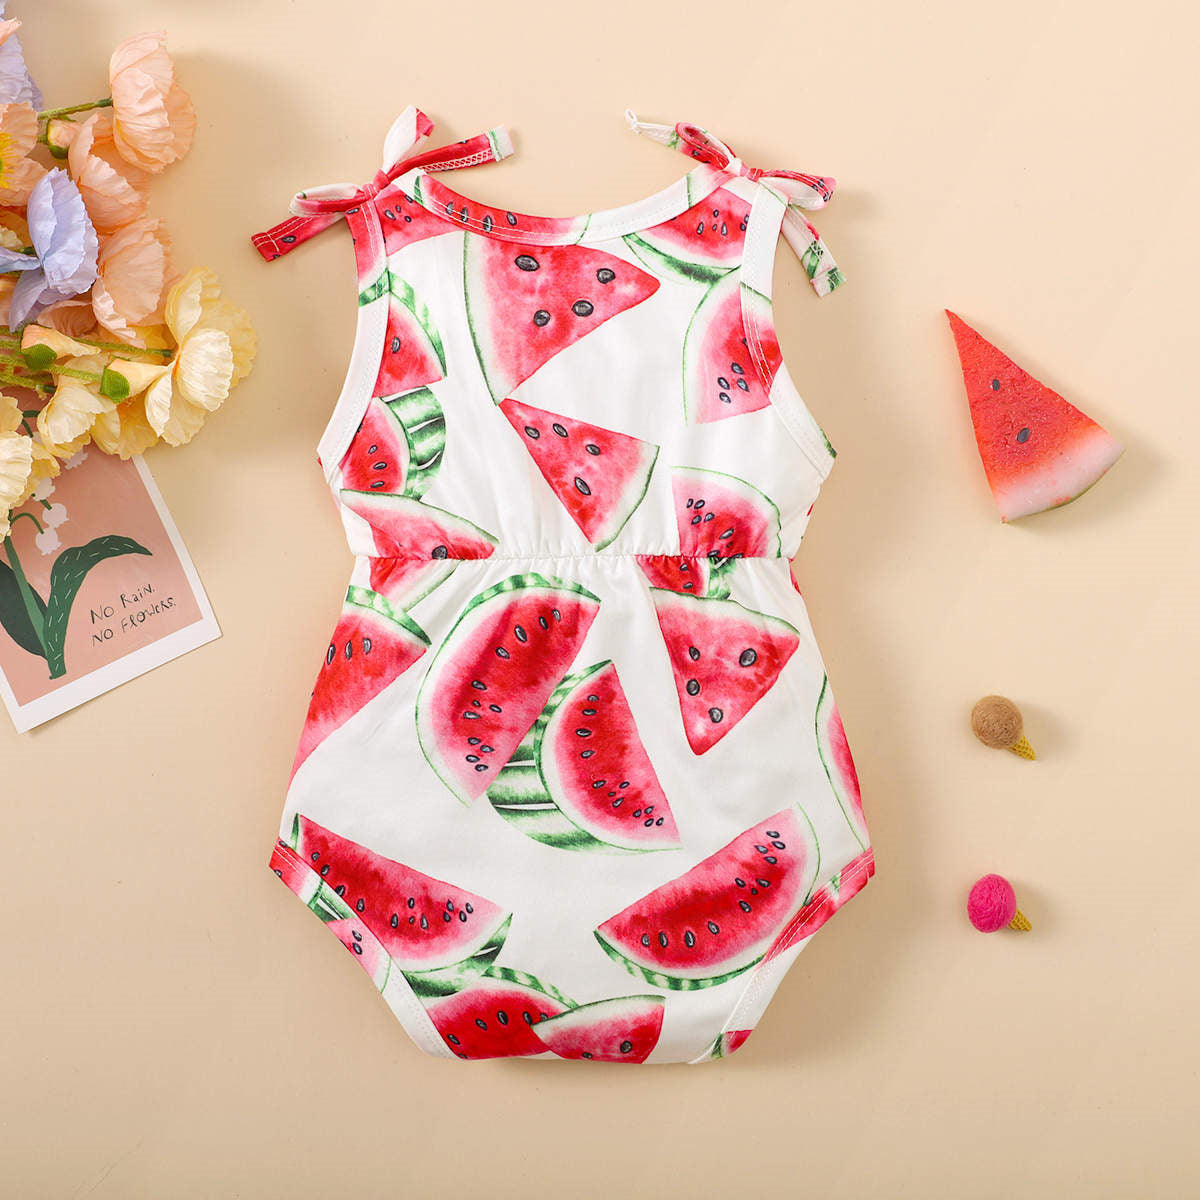 Pretty Watermelon Printed Baby Romper